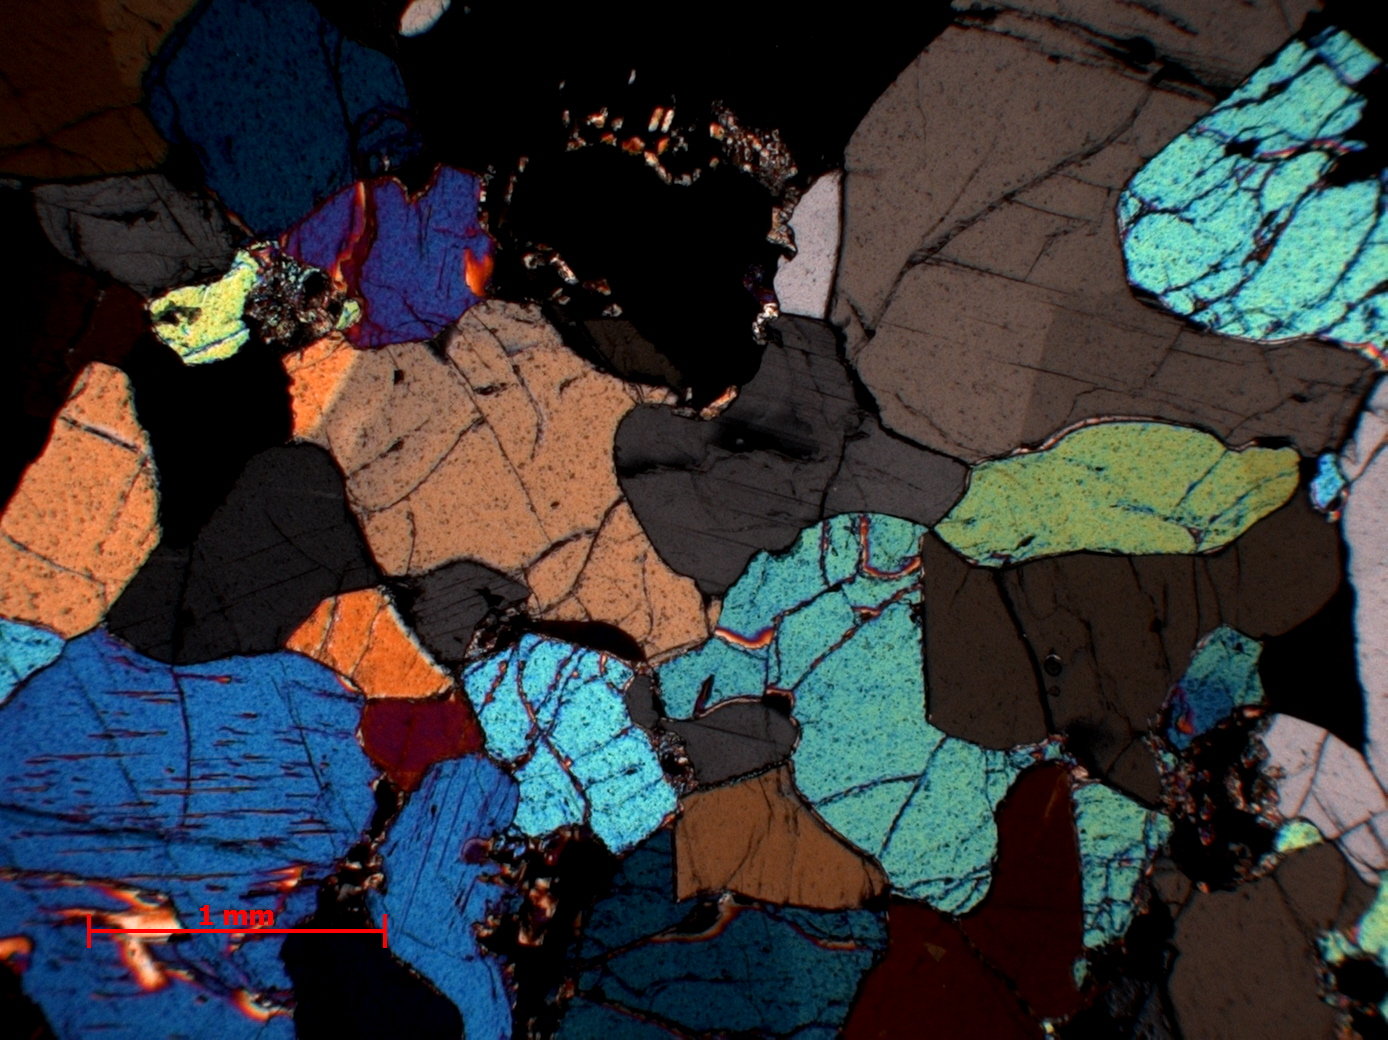 Lherzolite à spinelle Nodule de péridotite du maar de Borée Massif central Velay Borée Carrière de Molines